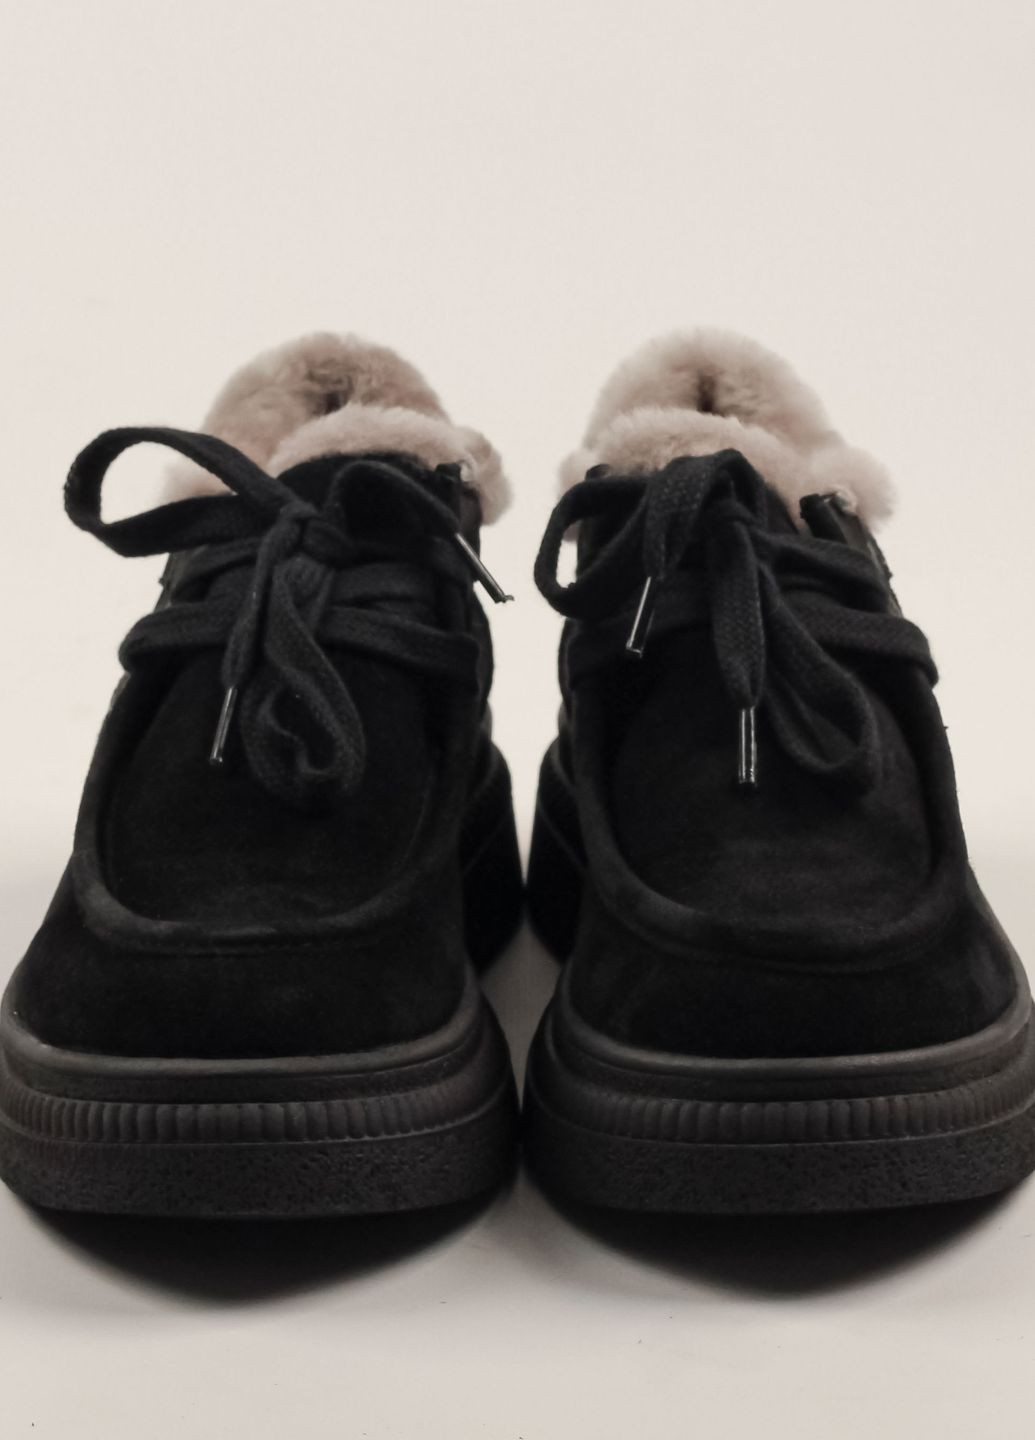 Зимние ботинки короткие черные замша Guero из натуральной замши